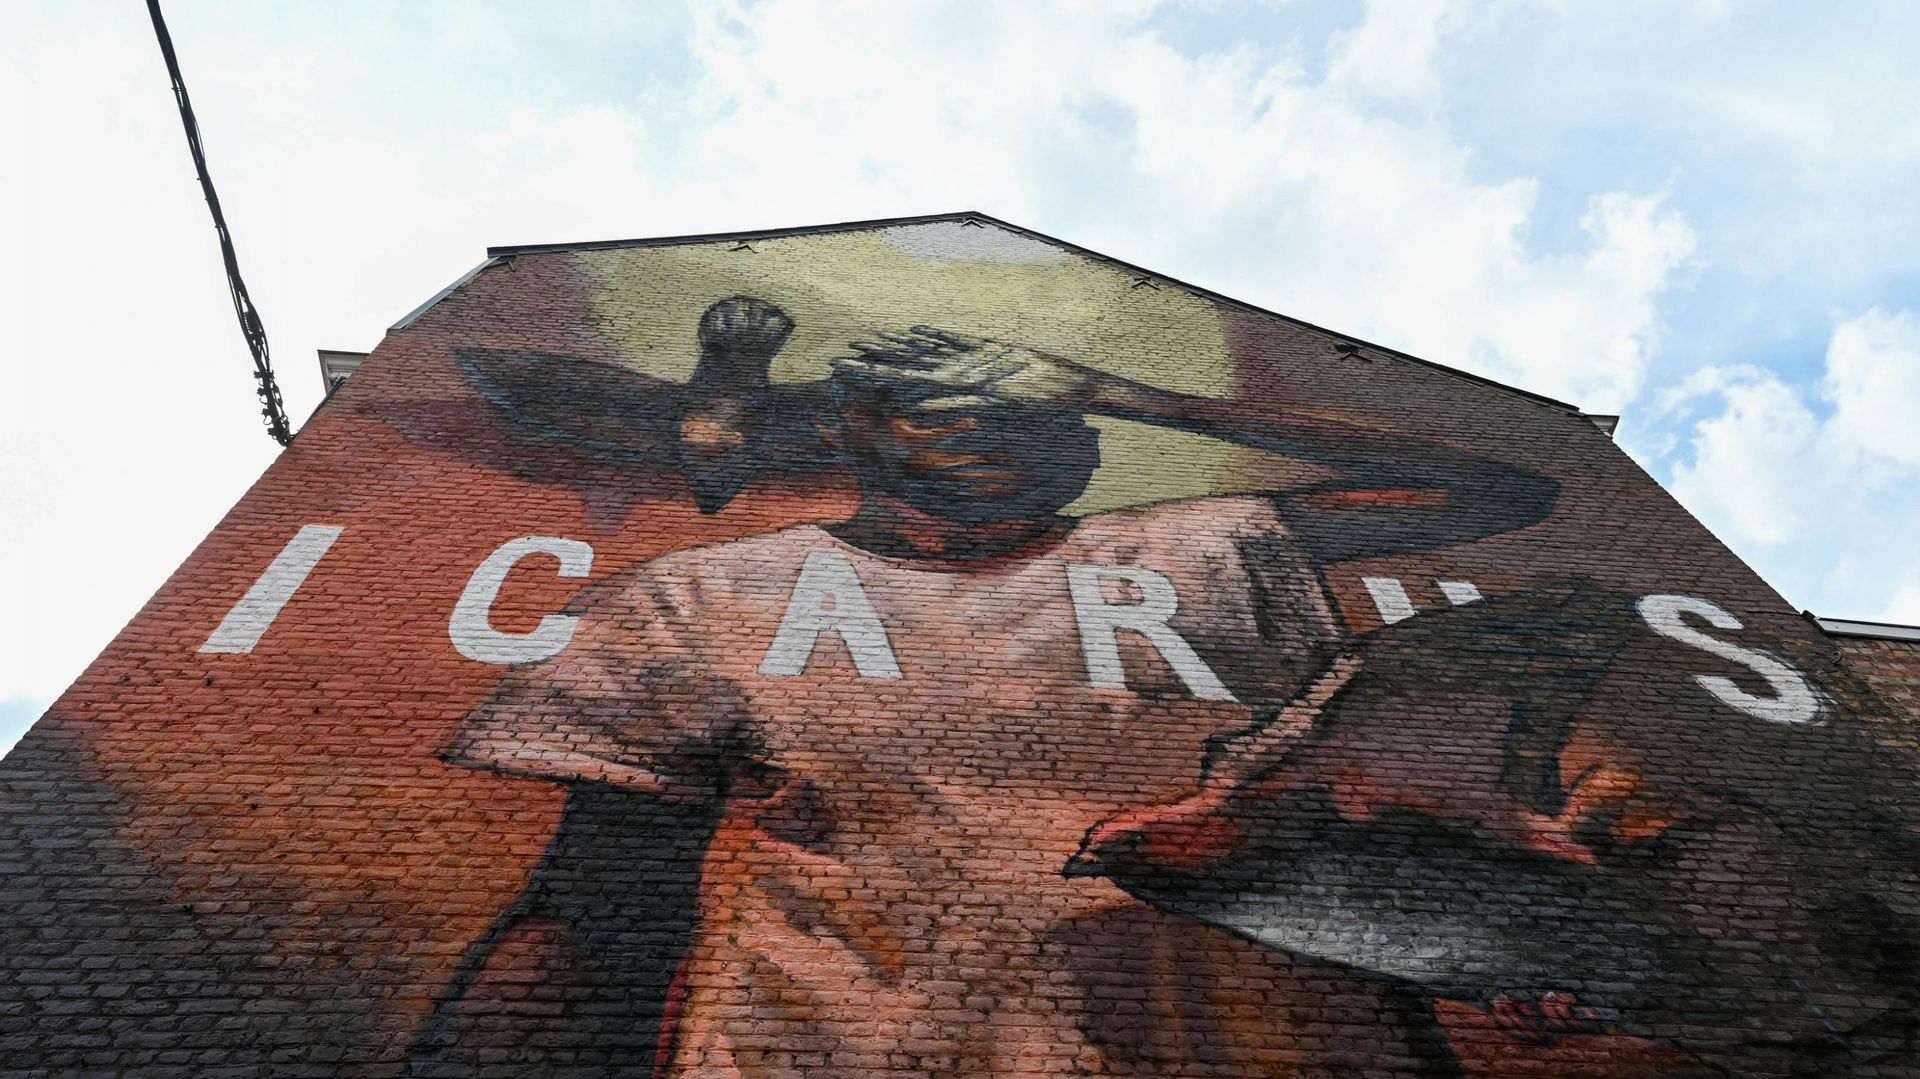 Un site web pour décourvrir Namur version "street art"